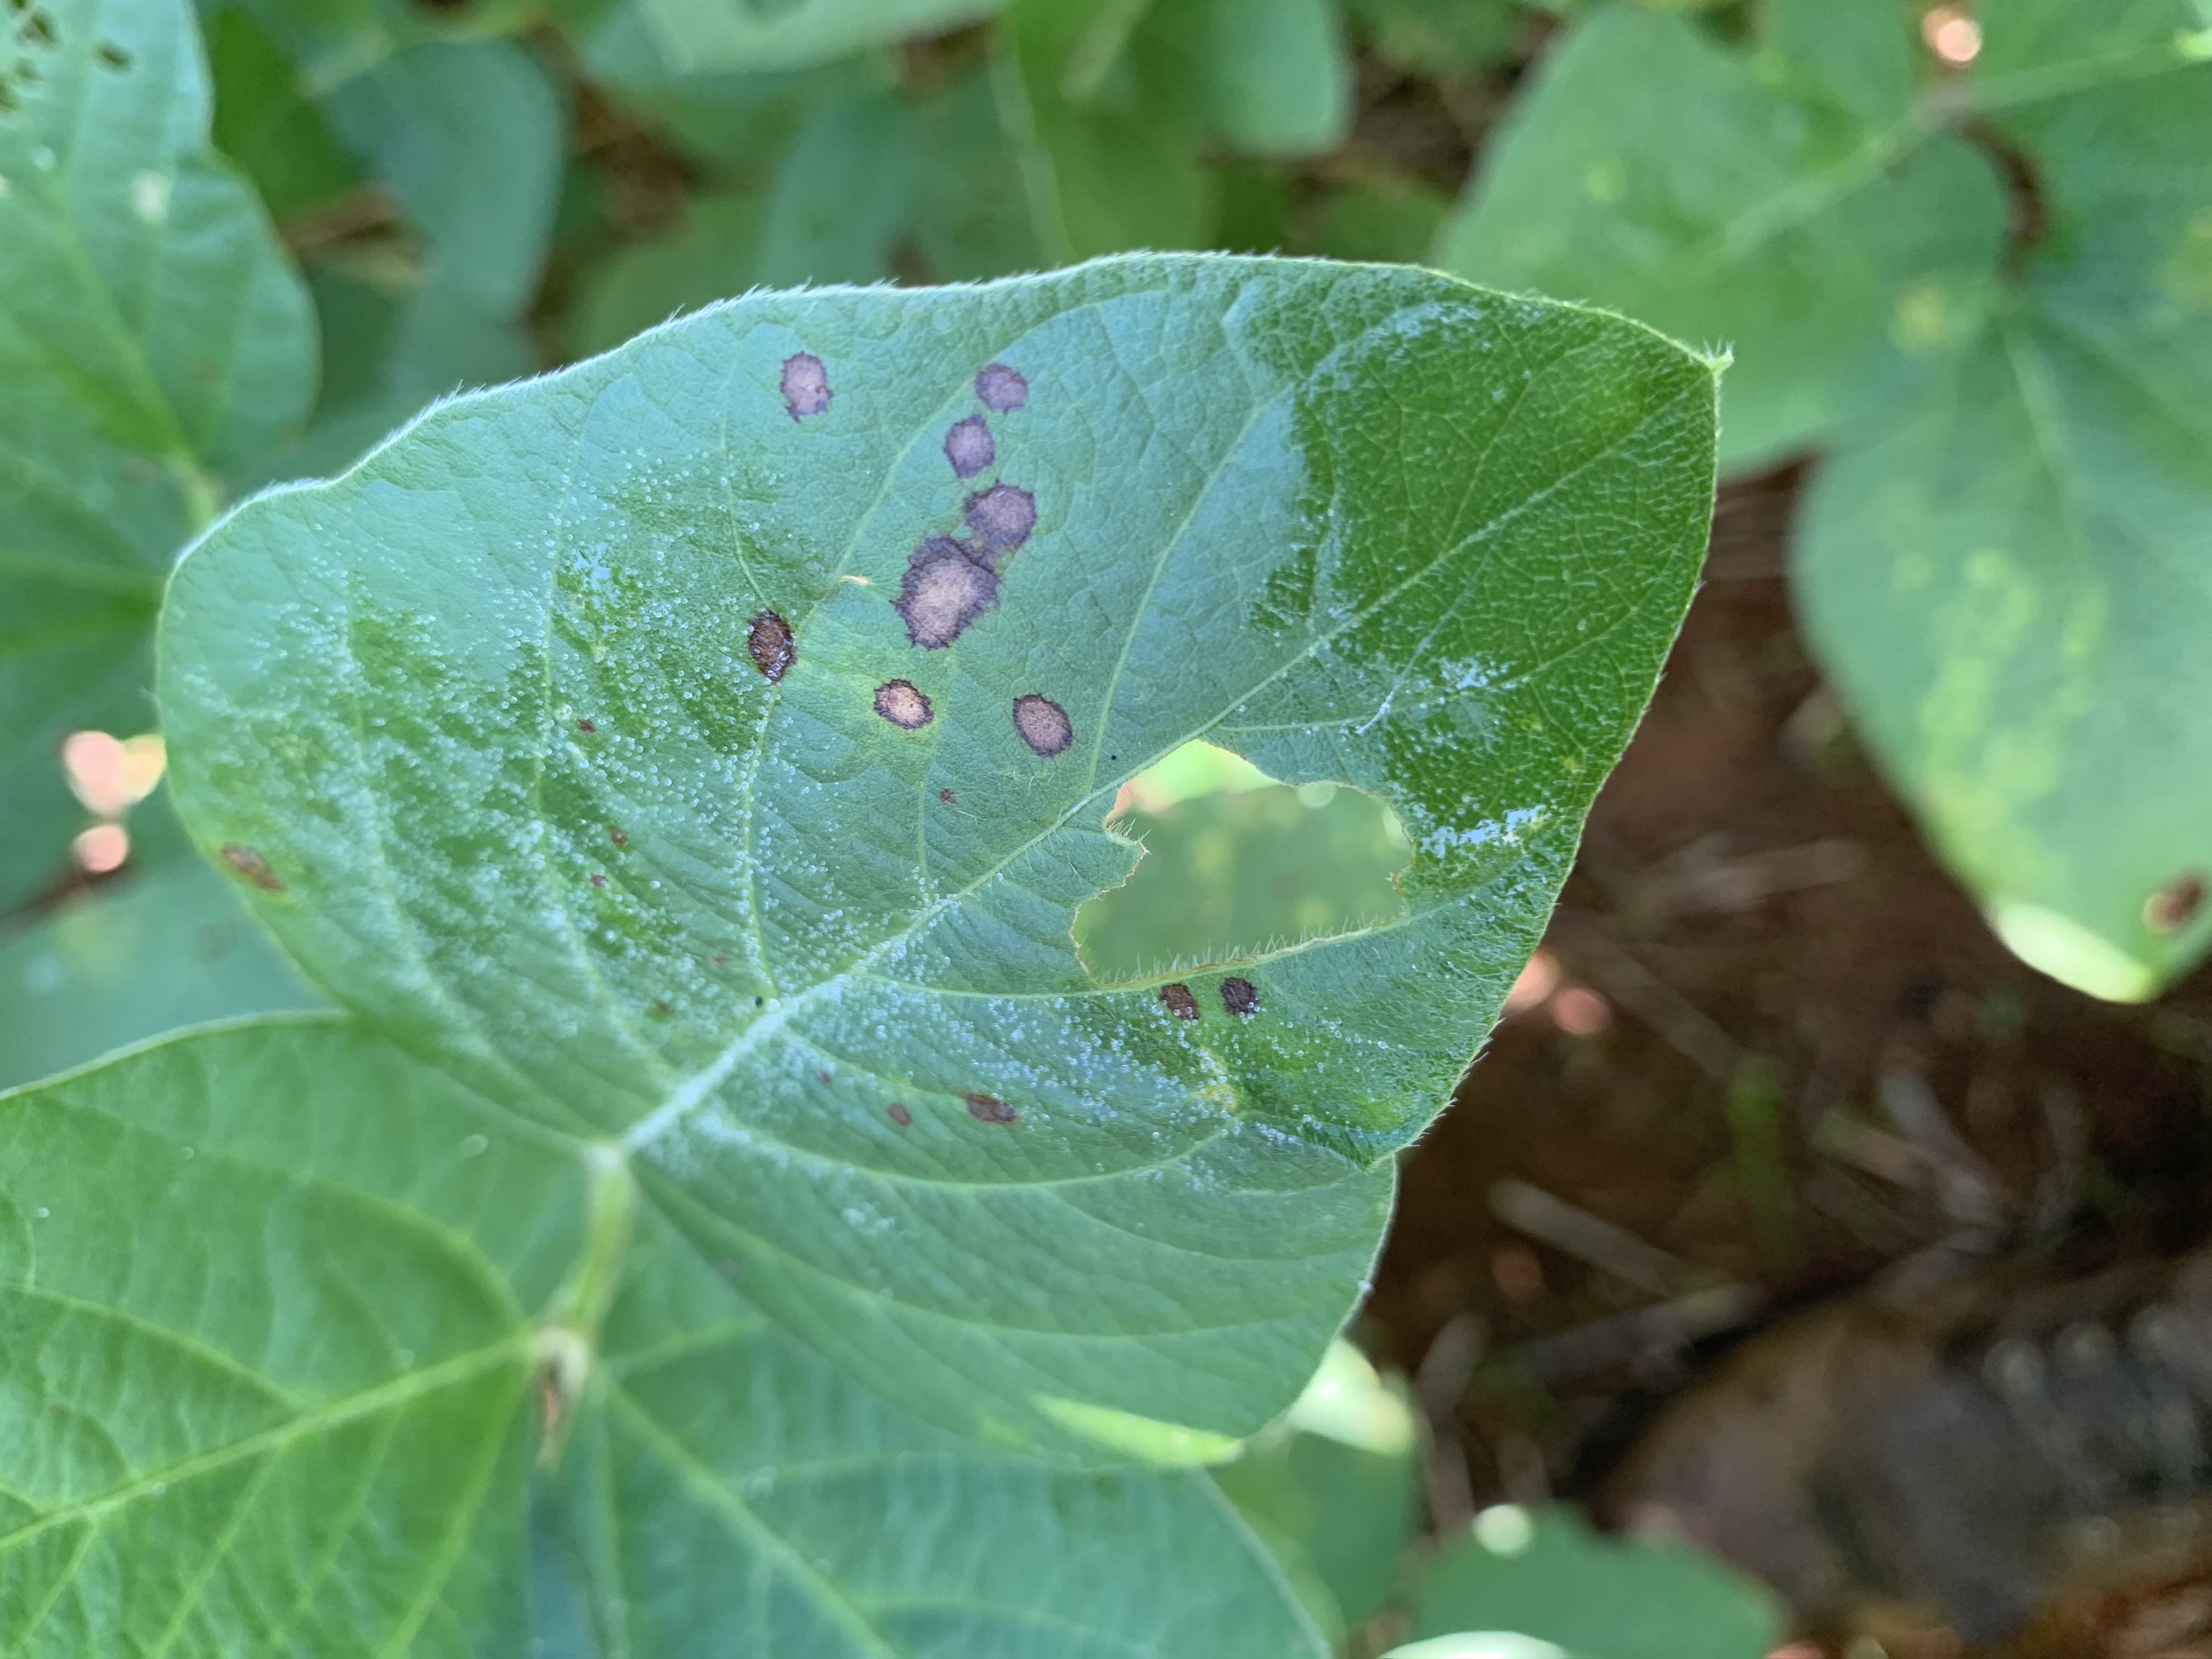 Frogeye leaf spot on soybean